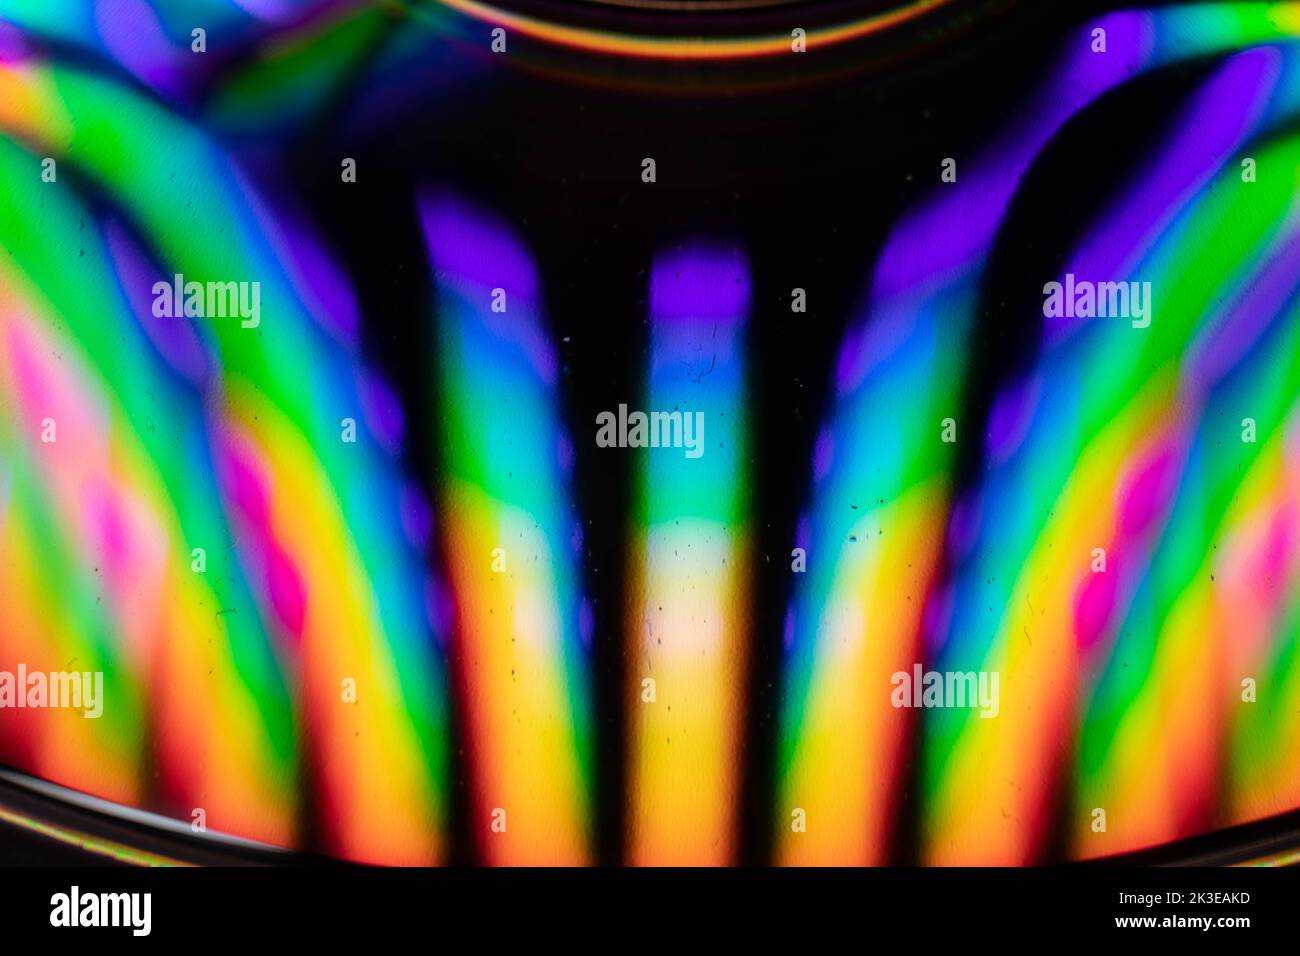 Gocce d'acqua su un CD creano un'esplosione di colore e una corsa per i sensi Foto Stock